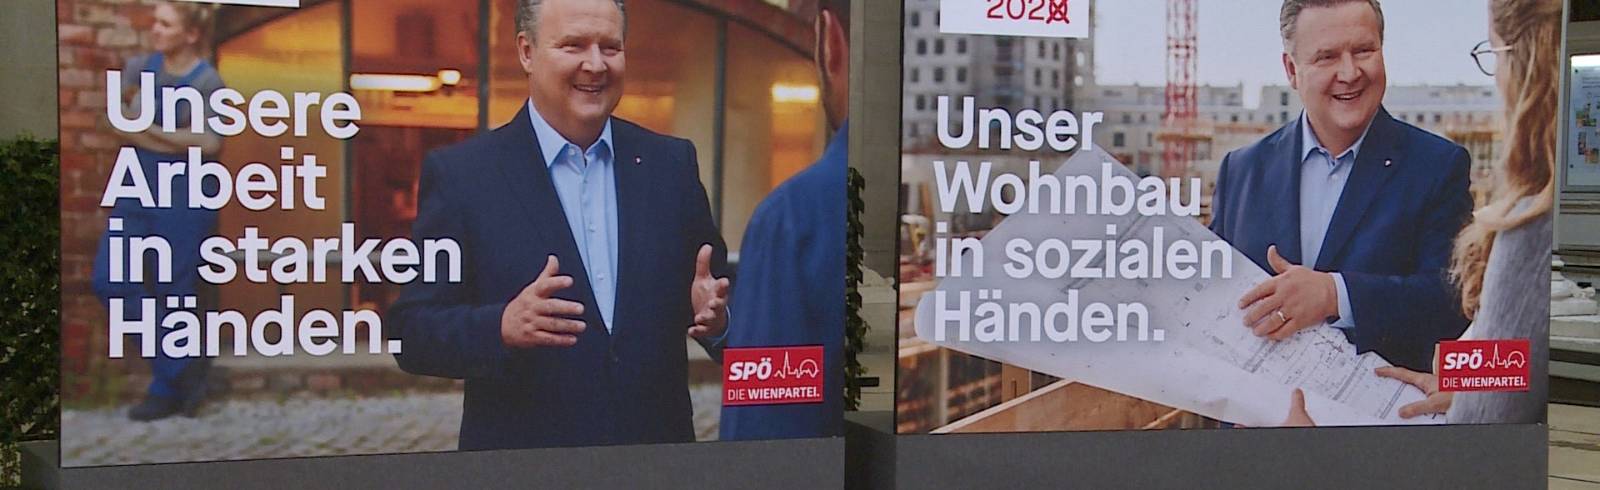 Wien-Wahl: SPÖ präsentiert Plakate